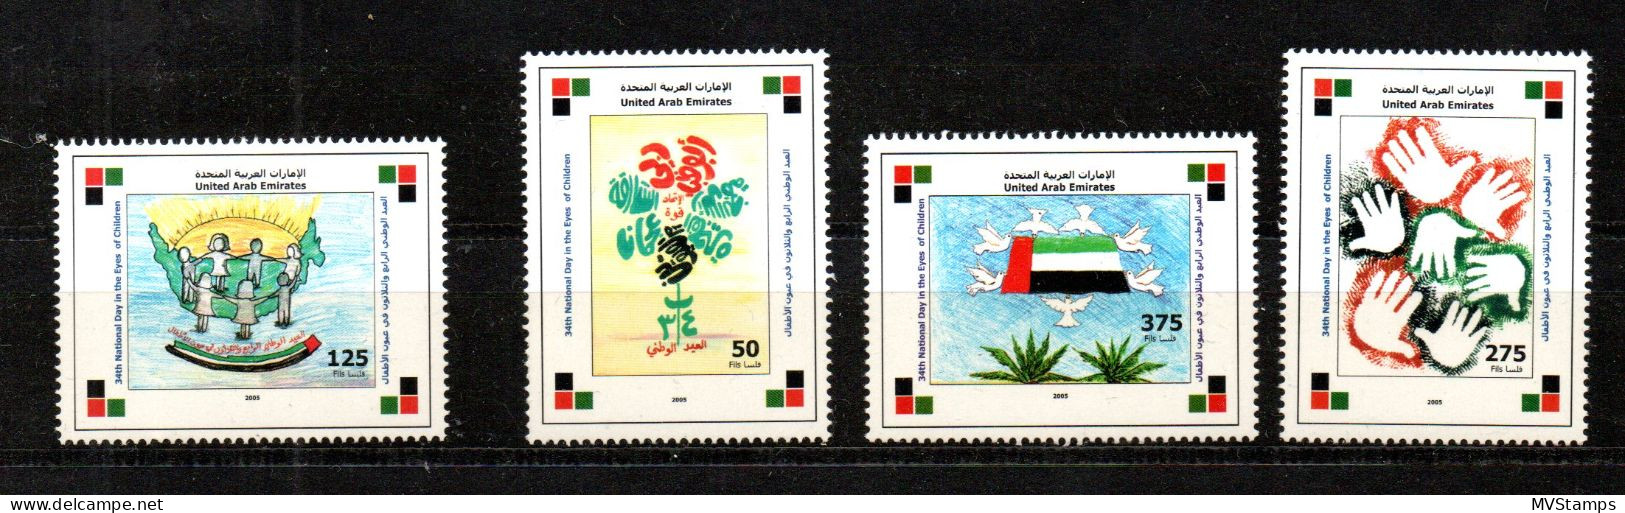 Vereinte Arab Emirates 2005 Satz 811/14 Kinderzeichnungen/Flagge Postfrisch - Verenigde Arabische Emiraten